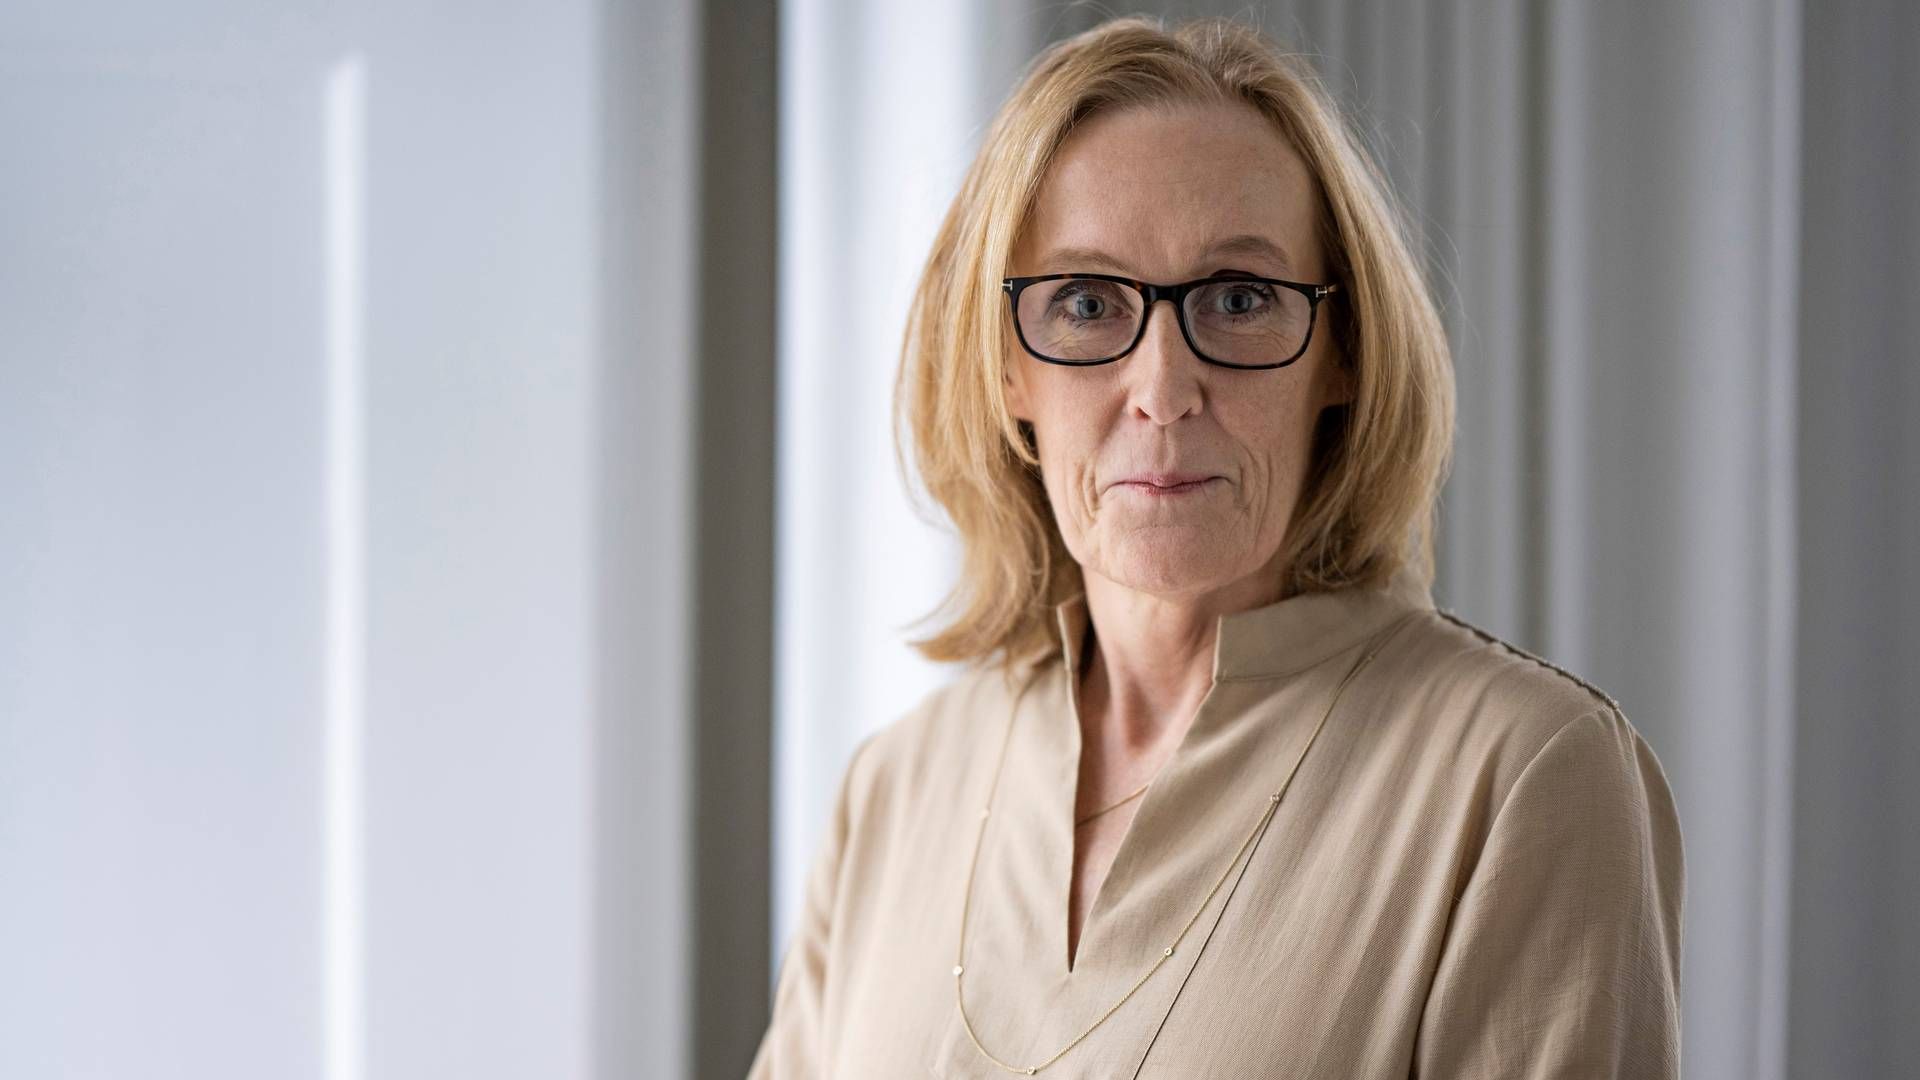 Marianne Simonsen stoppede som direktør i Finansiel Stabilitet lige før jul. | Foto: Pr